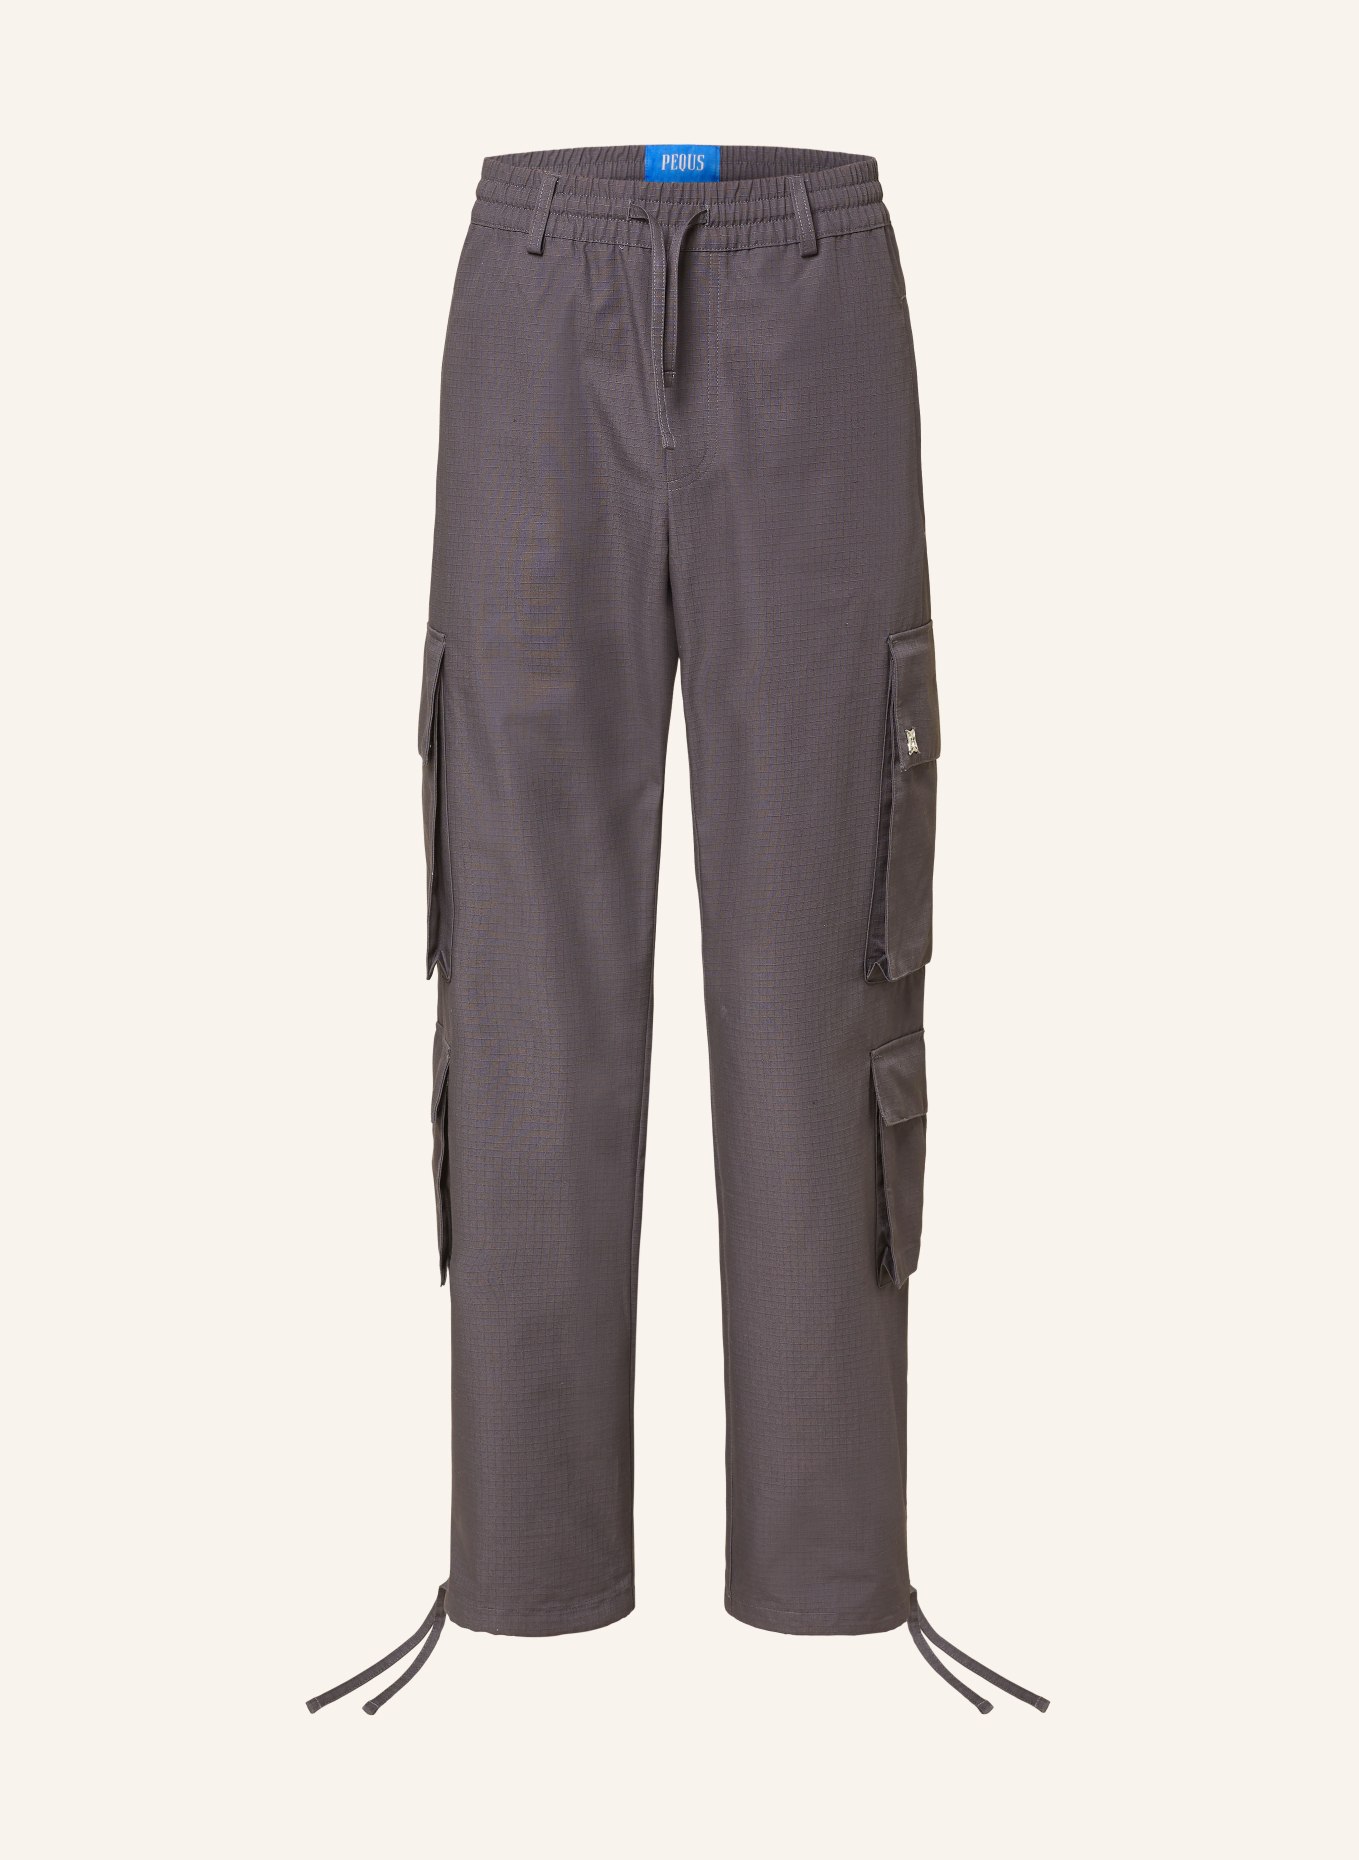 PEQUS Cargo pants, Color: DARK GRAY (Image 1)